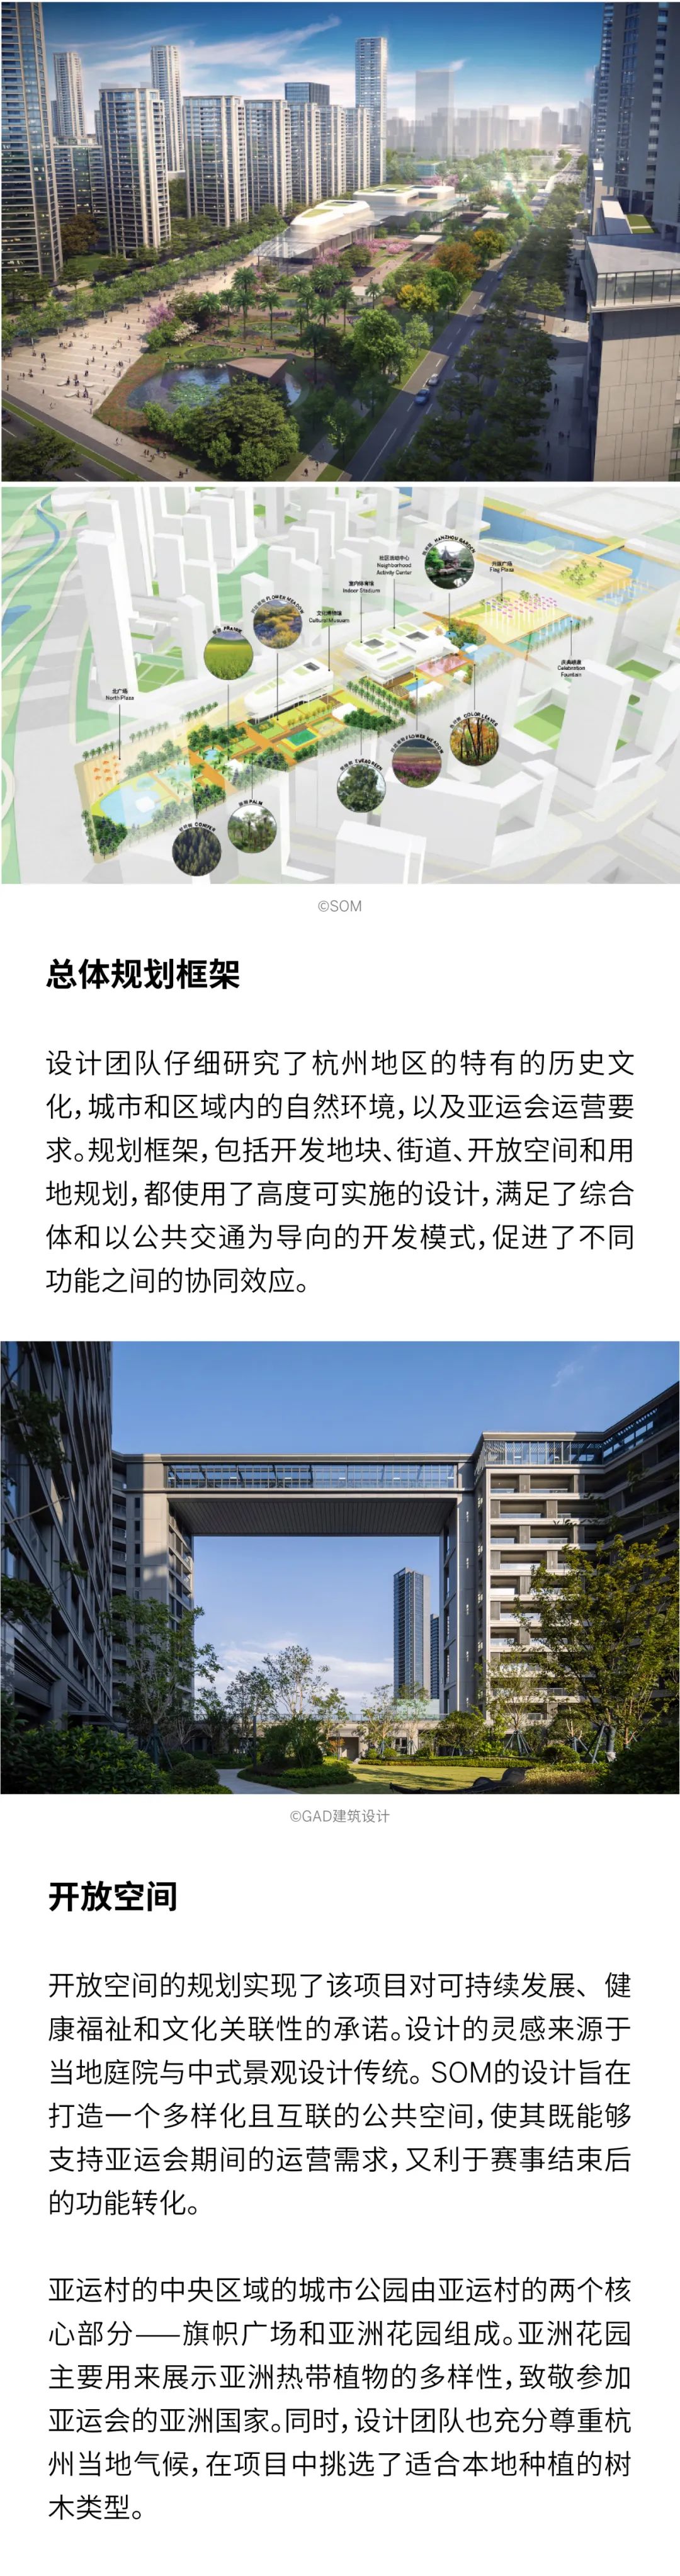 SOM x 杭州 | 杭州亚运村总体规划